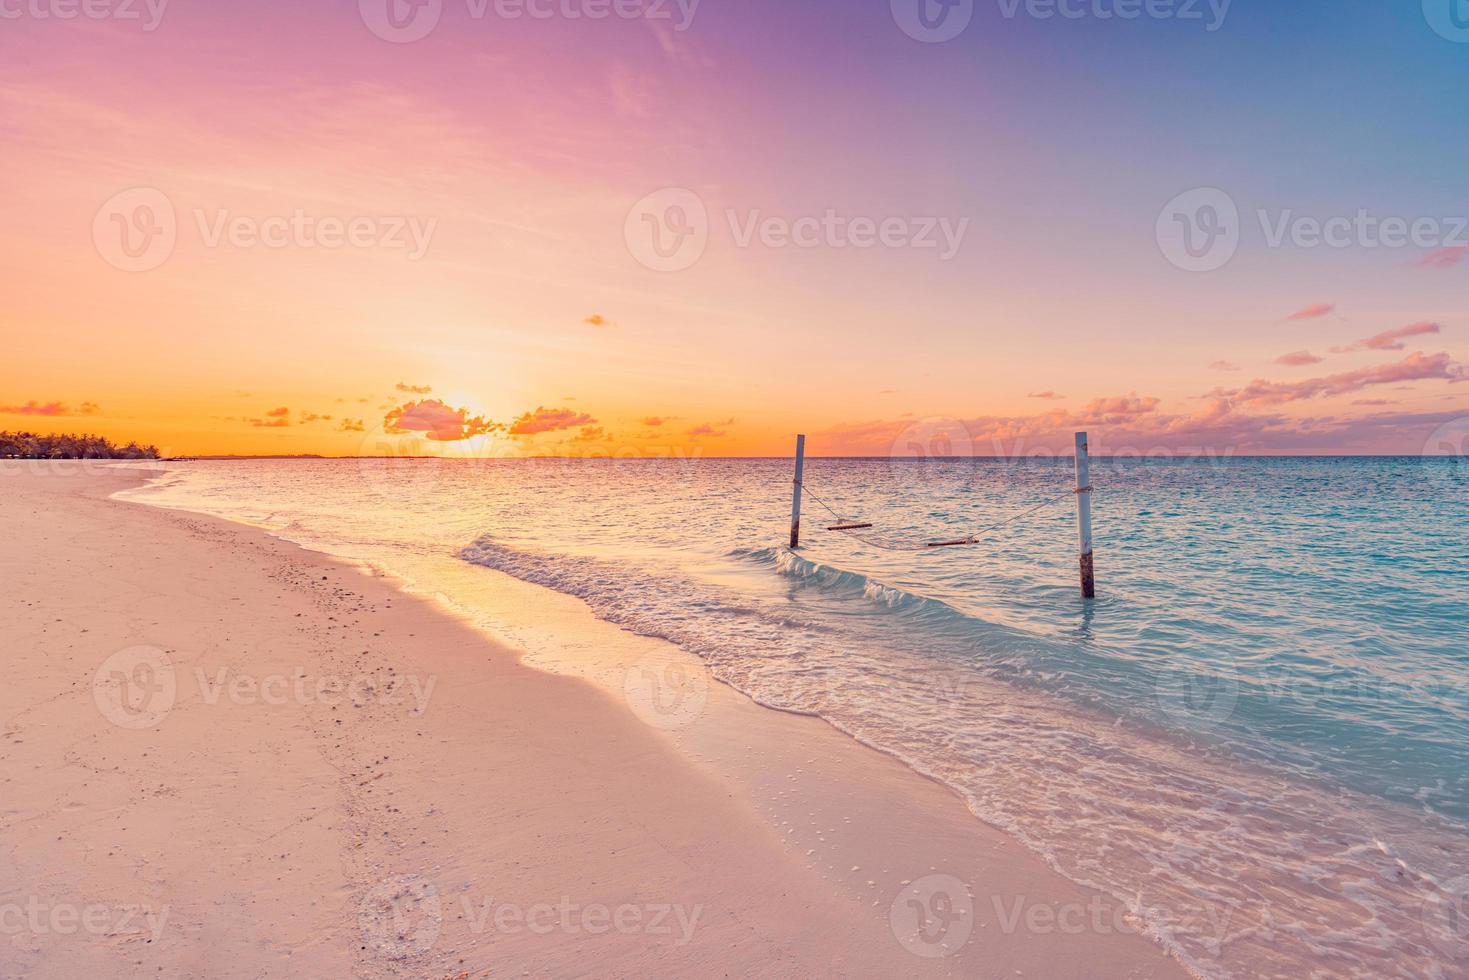 praia do sol tropical e fundo do céu como paisagem exótica de verão com balanço de praia ou rede e areia branca e faixa de praia de mar calmo. férias na praia da ilha paradisíaca ou destino de férias de verão foto